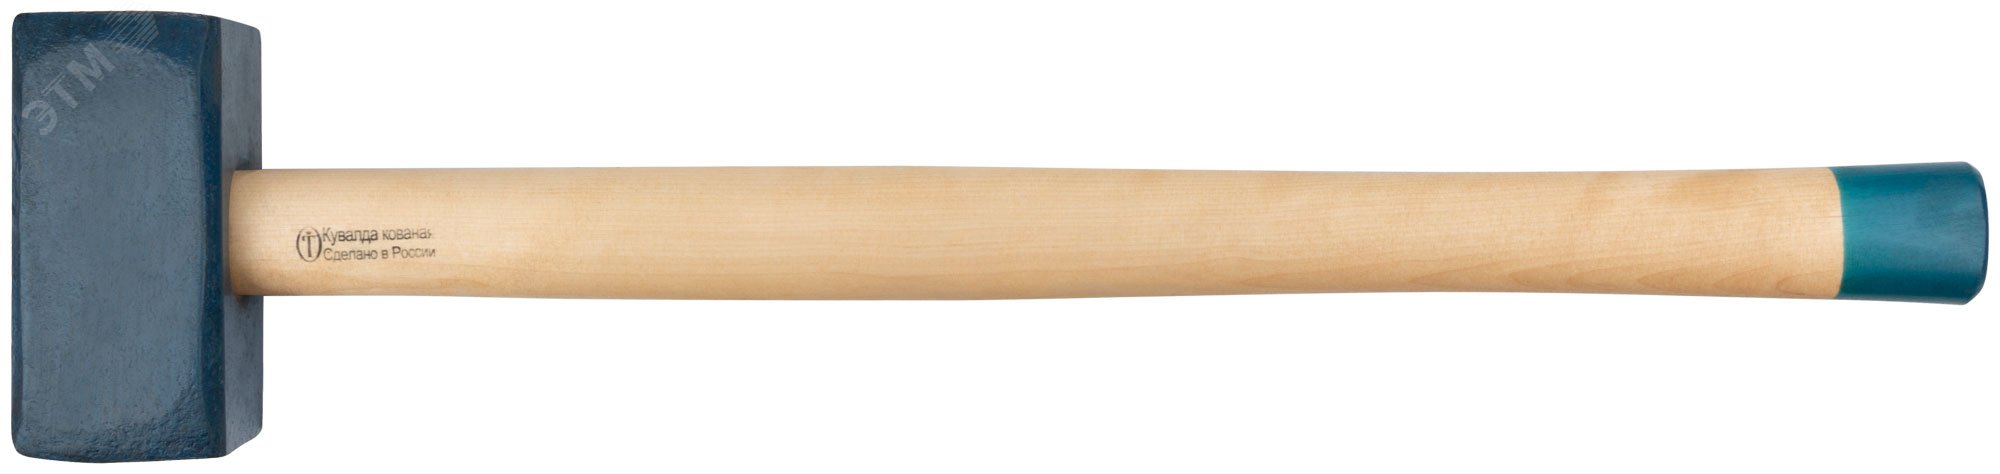 Кувалда кованая в сборе, деревянная эргономичная ручка 8.6 кг 45038 РОС - превью